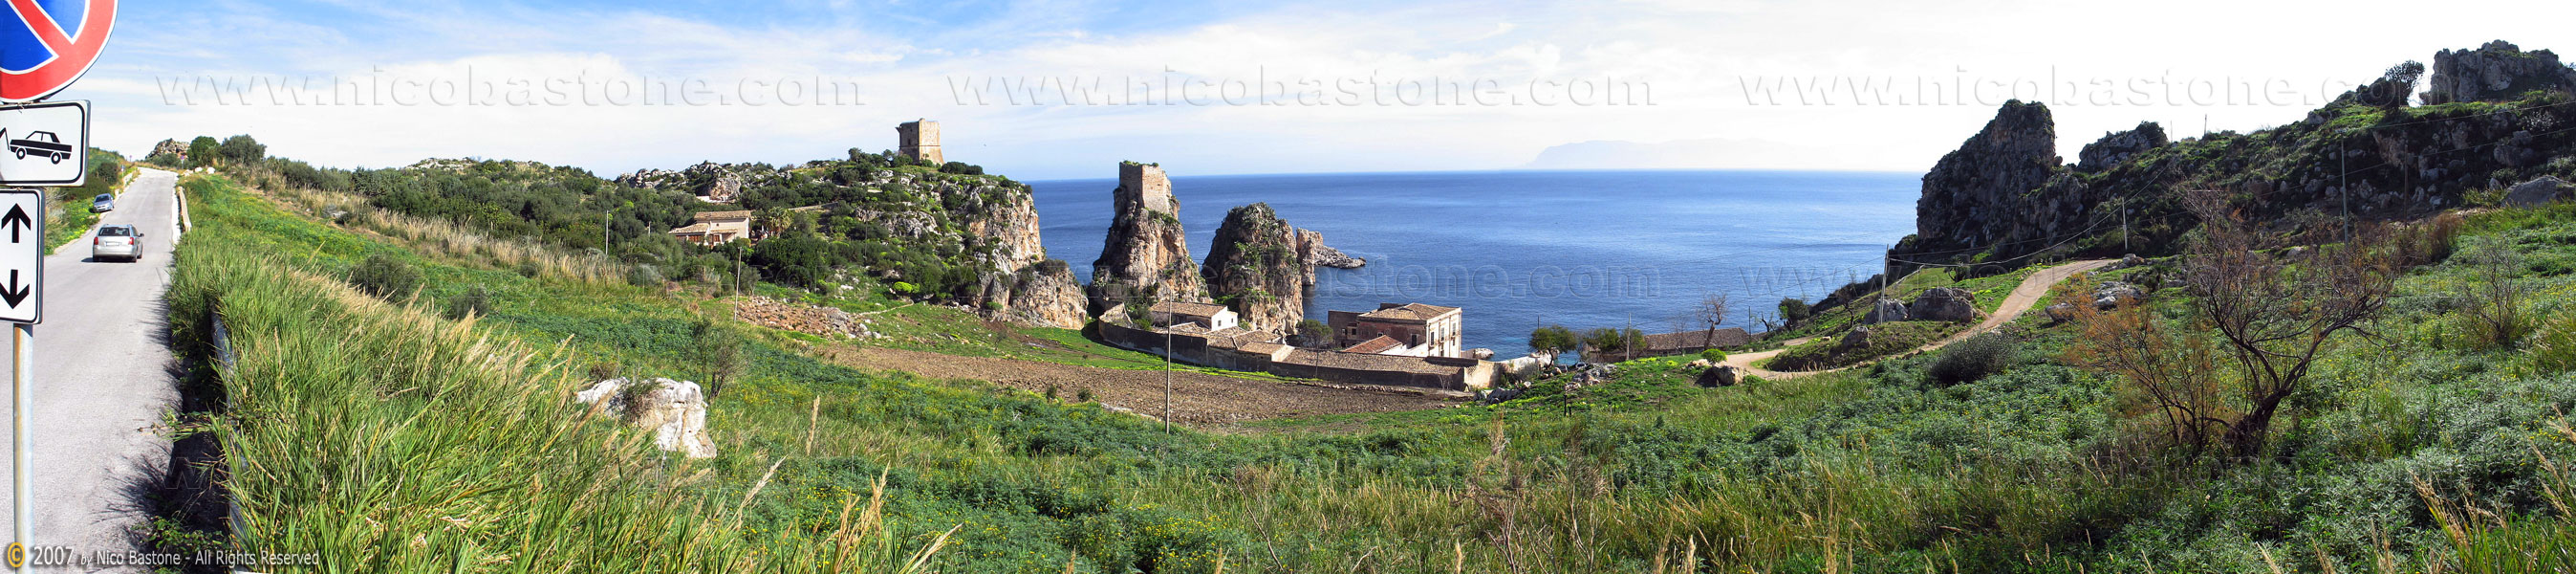 Panoramic Photography - Foto Panoramiche - "I Faraglioni" Scopello, Castellammare del Golfo TP - Panorama - A large view - 2695x600